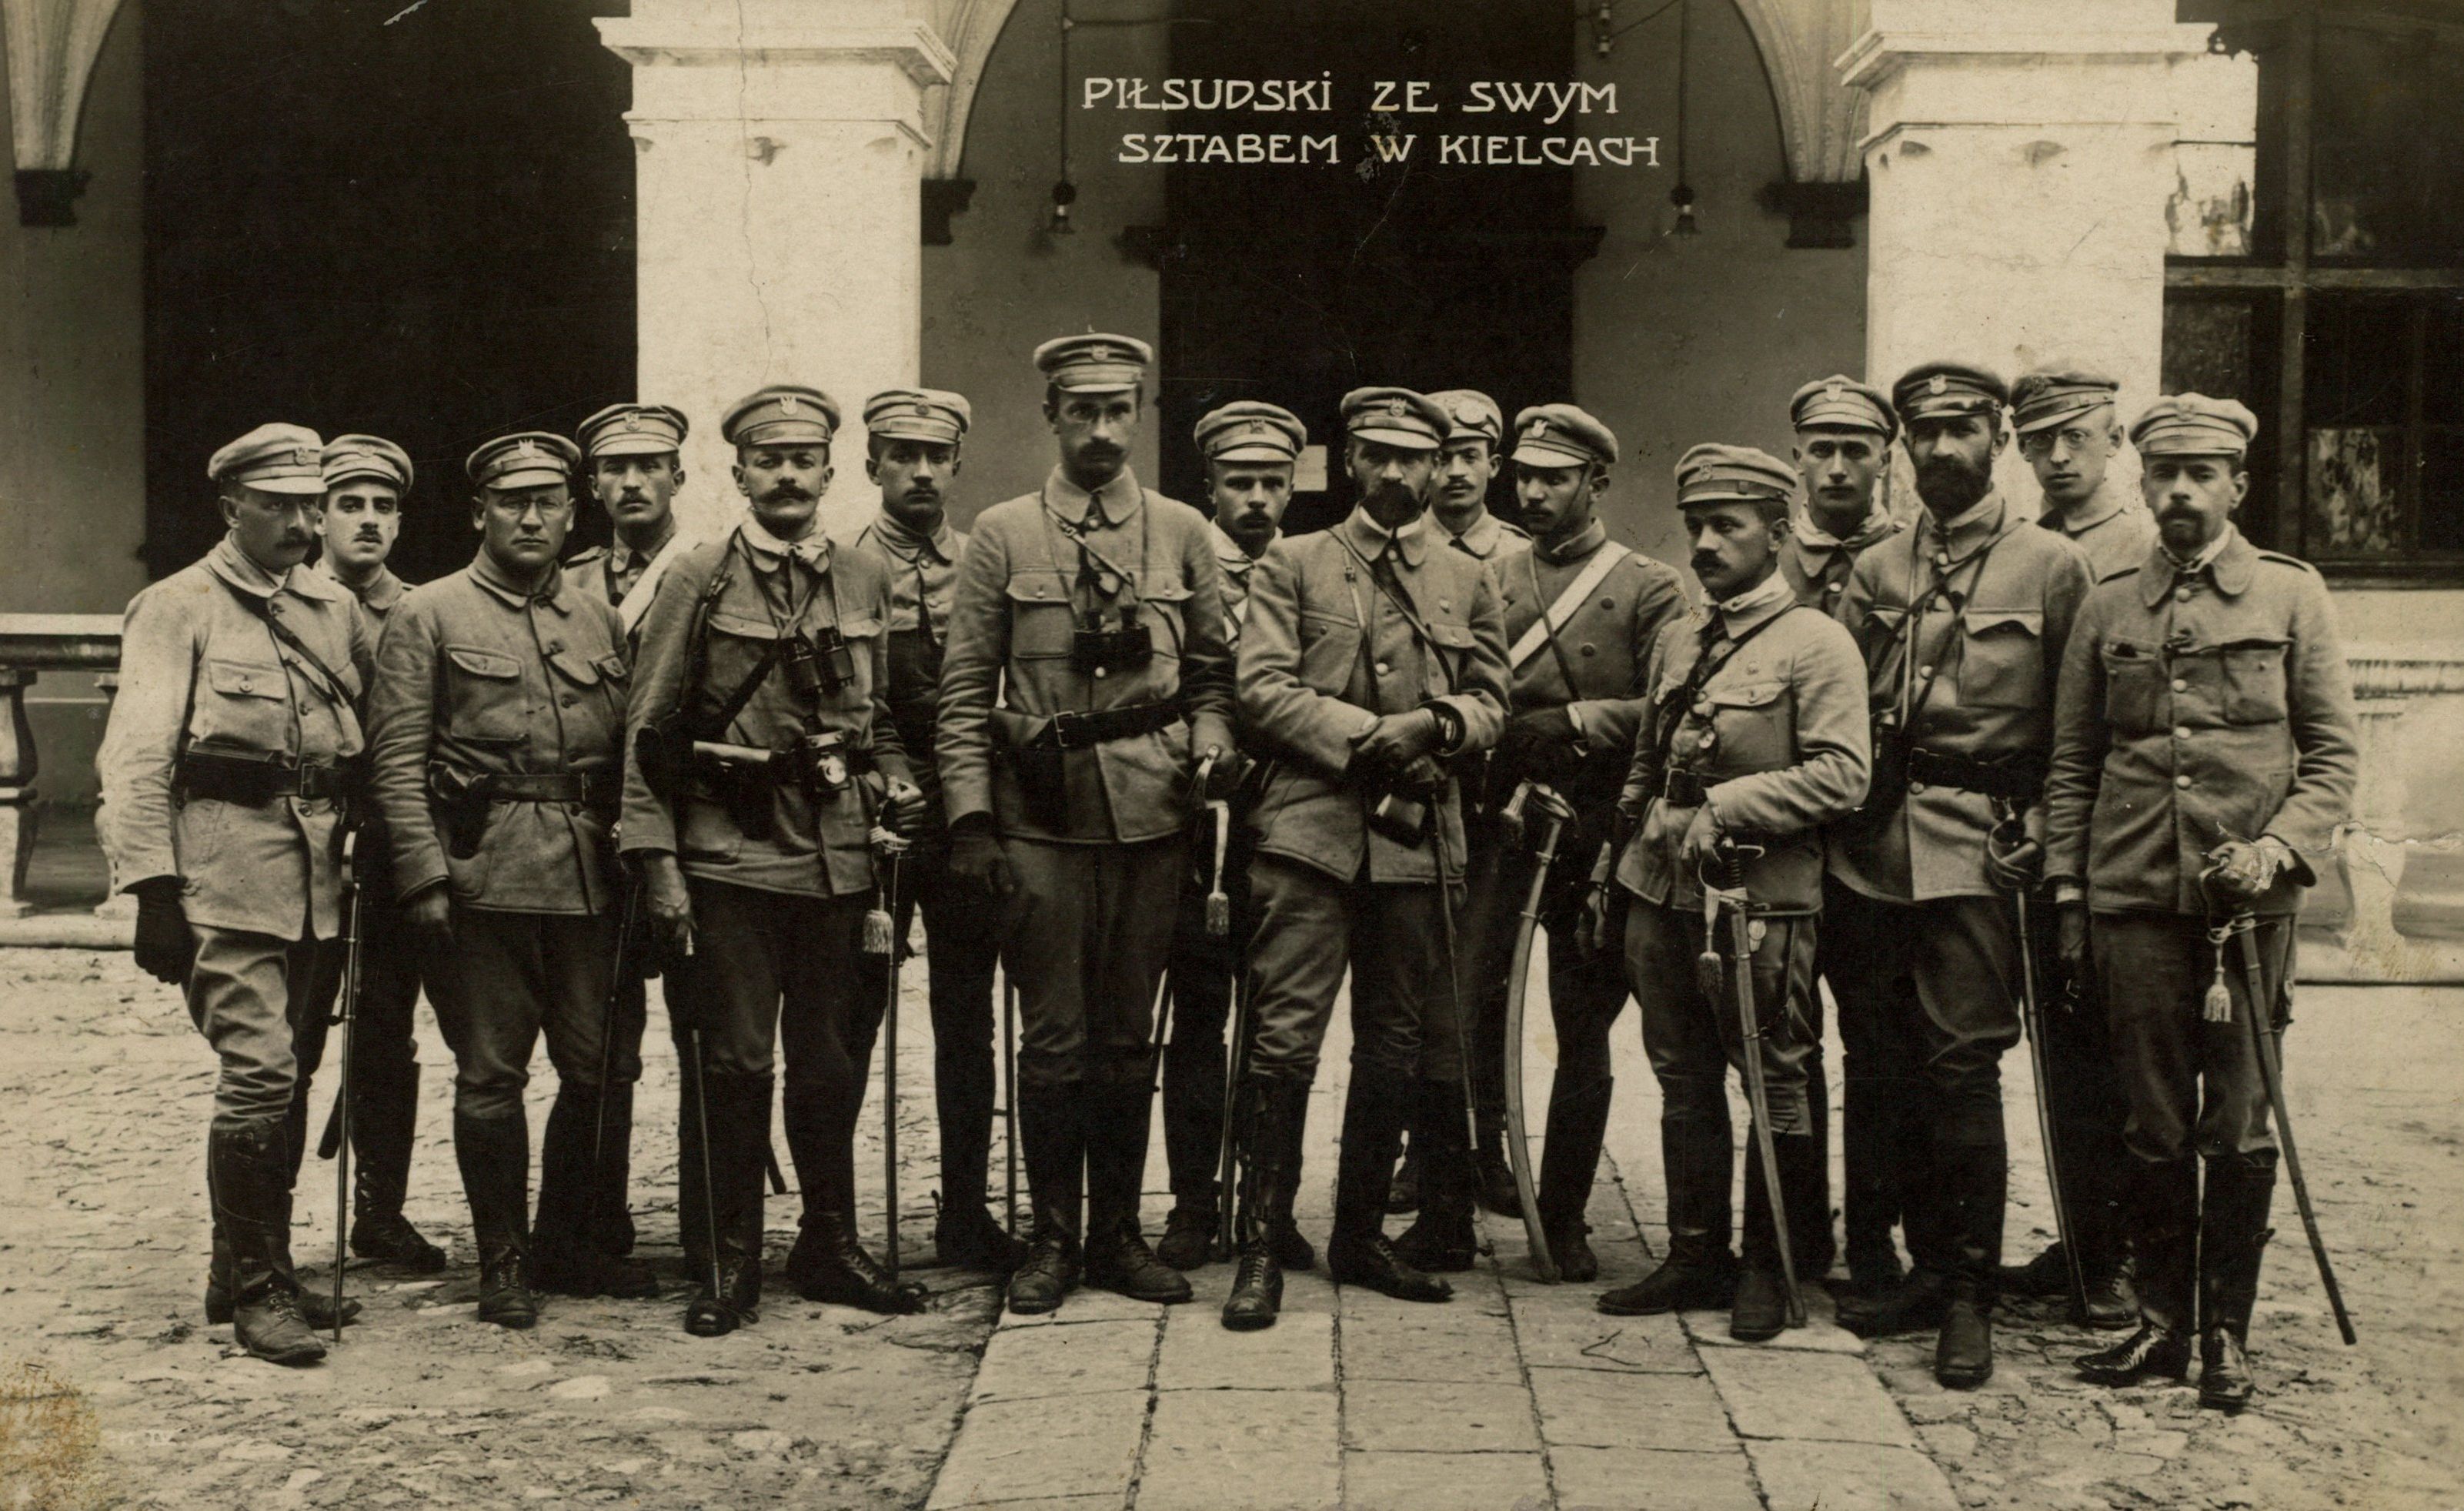 Piłsudski ze swym sztabem w Kielcach w sierpniu 1914 r.